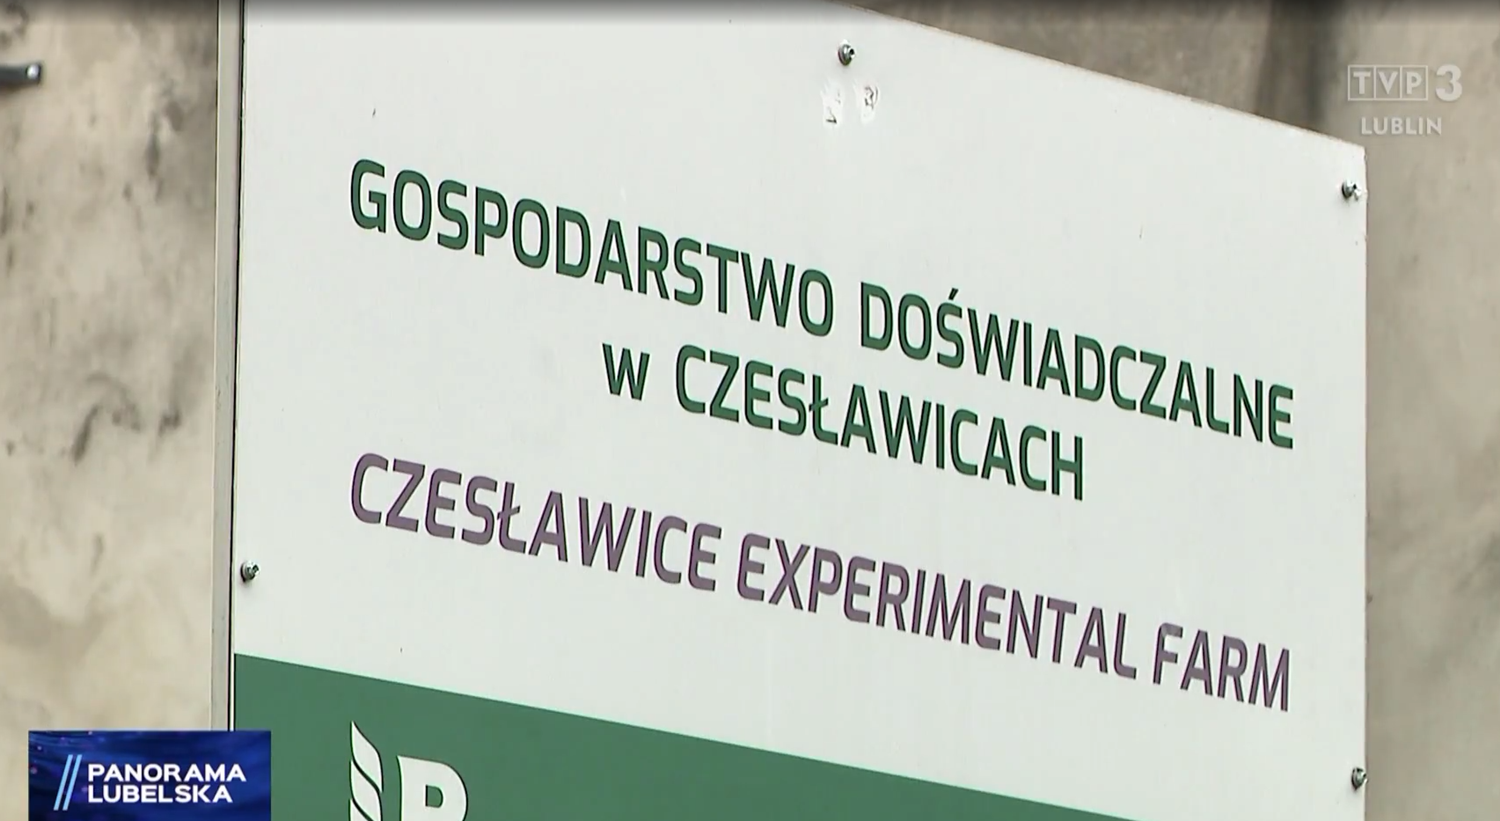 Biała tablica informacyjna z napisem:  Gospodarstwo Doświadczalne w Czesławicach/Czesłąwice Experimental Farm